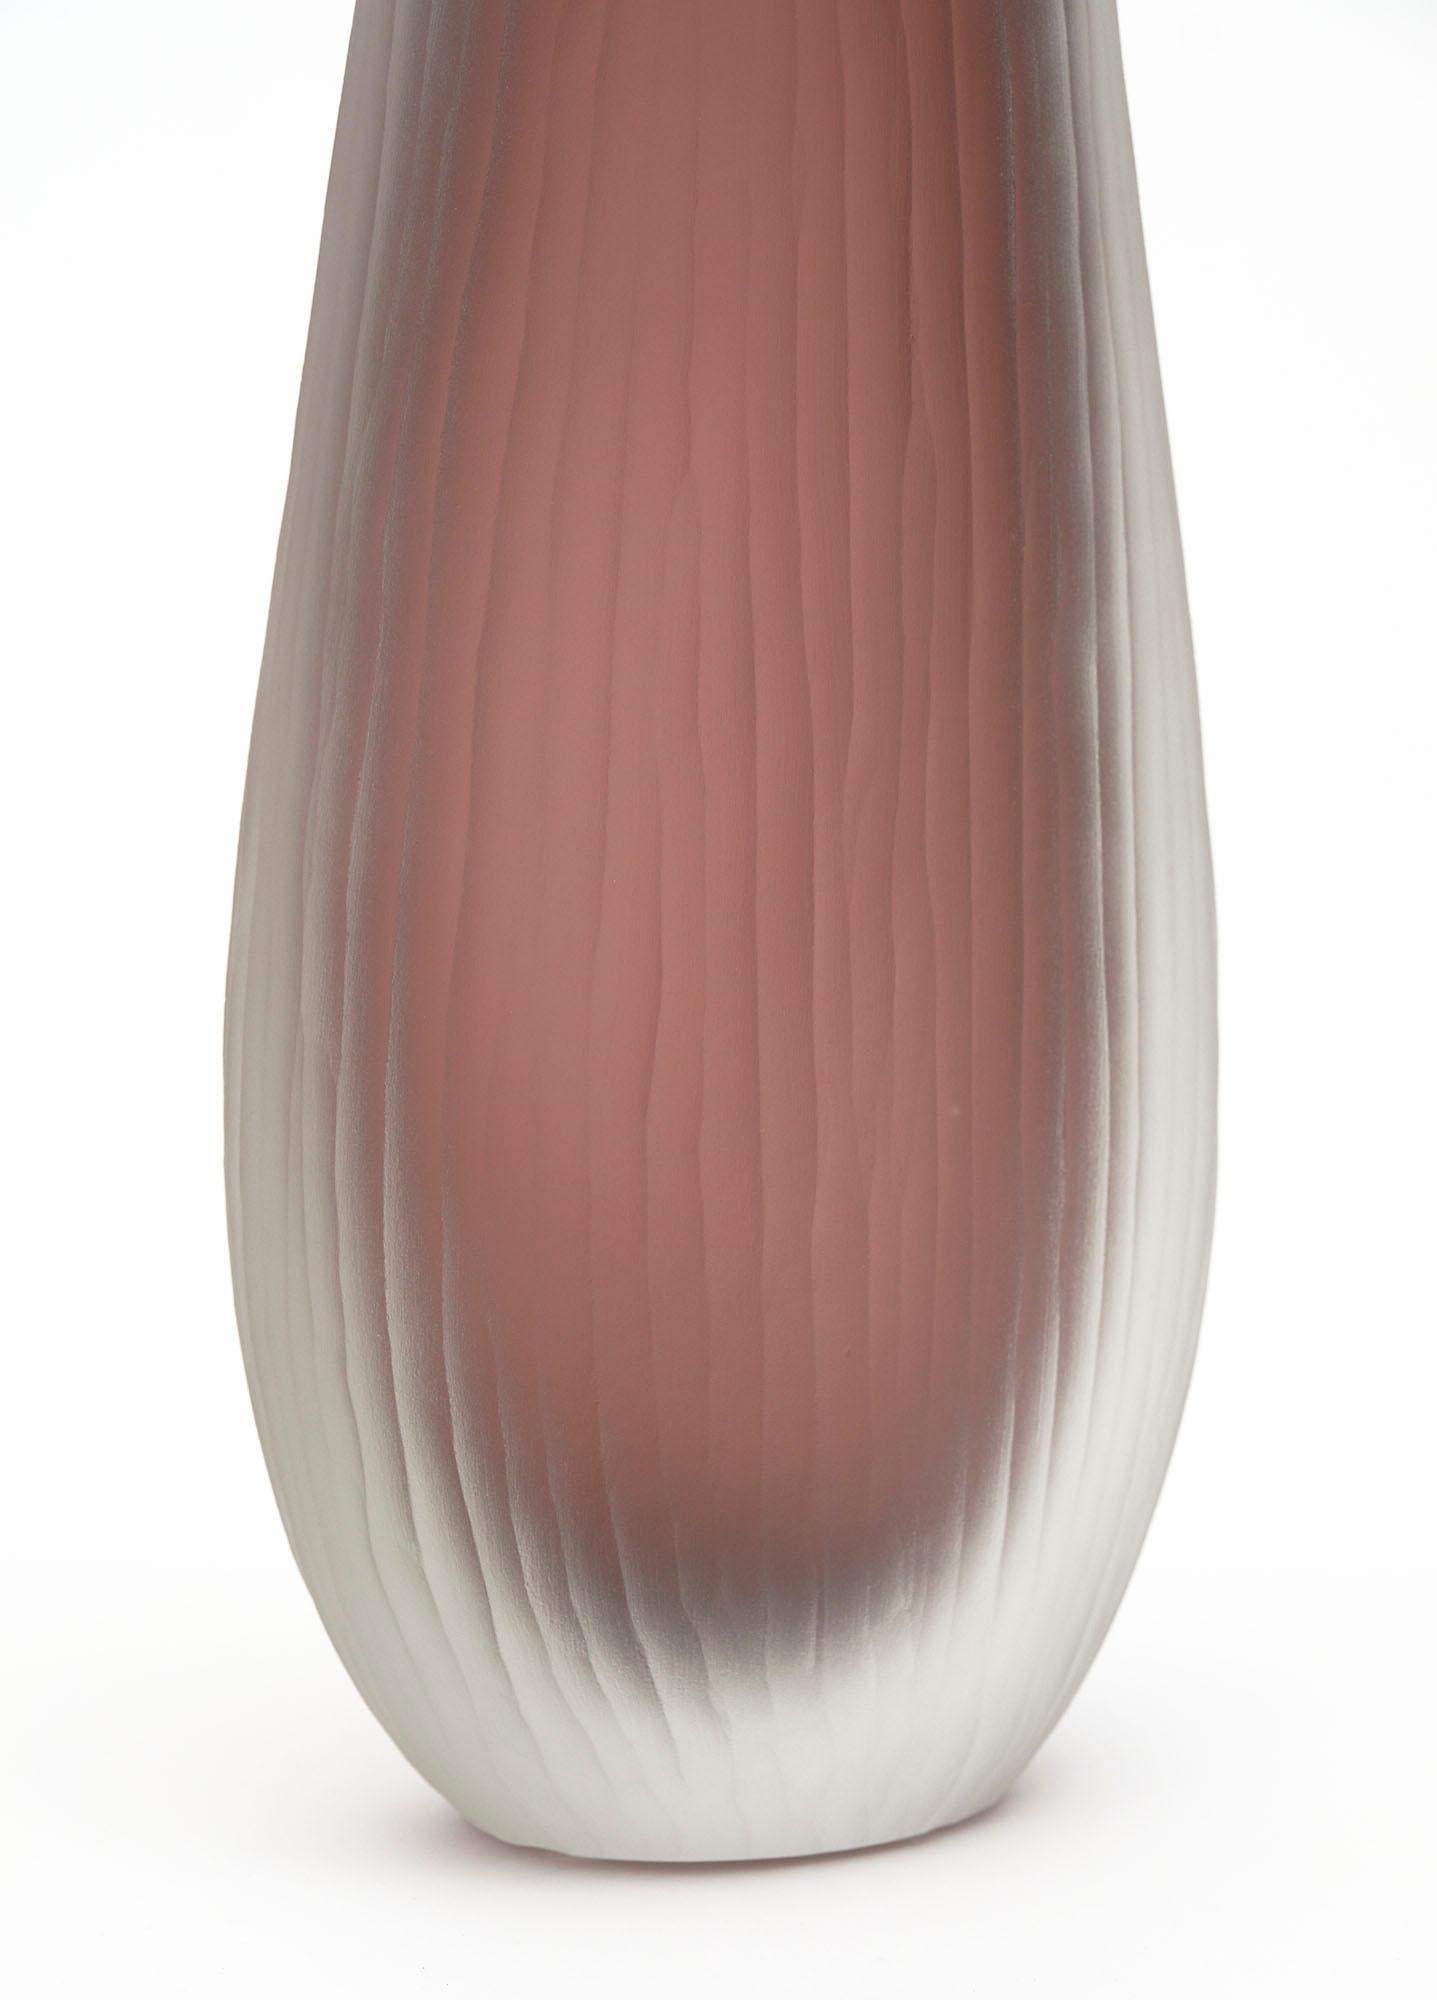 Italian Tobia Scarpa Style Murano Glass Trio of Vases For Sale